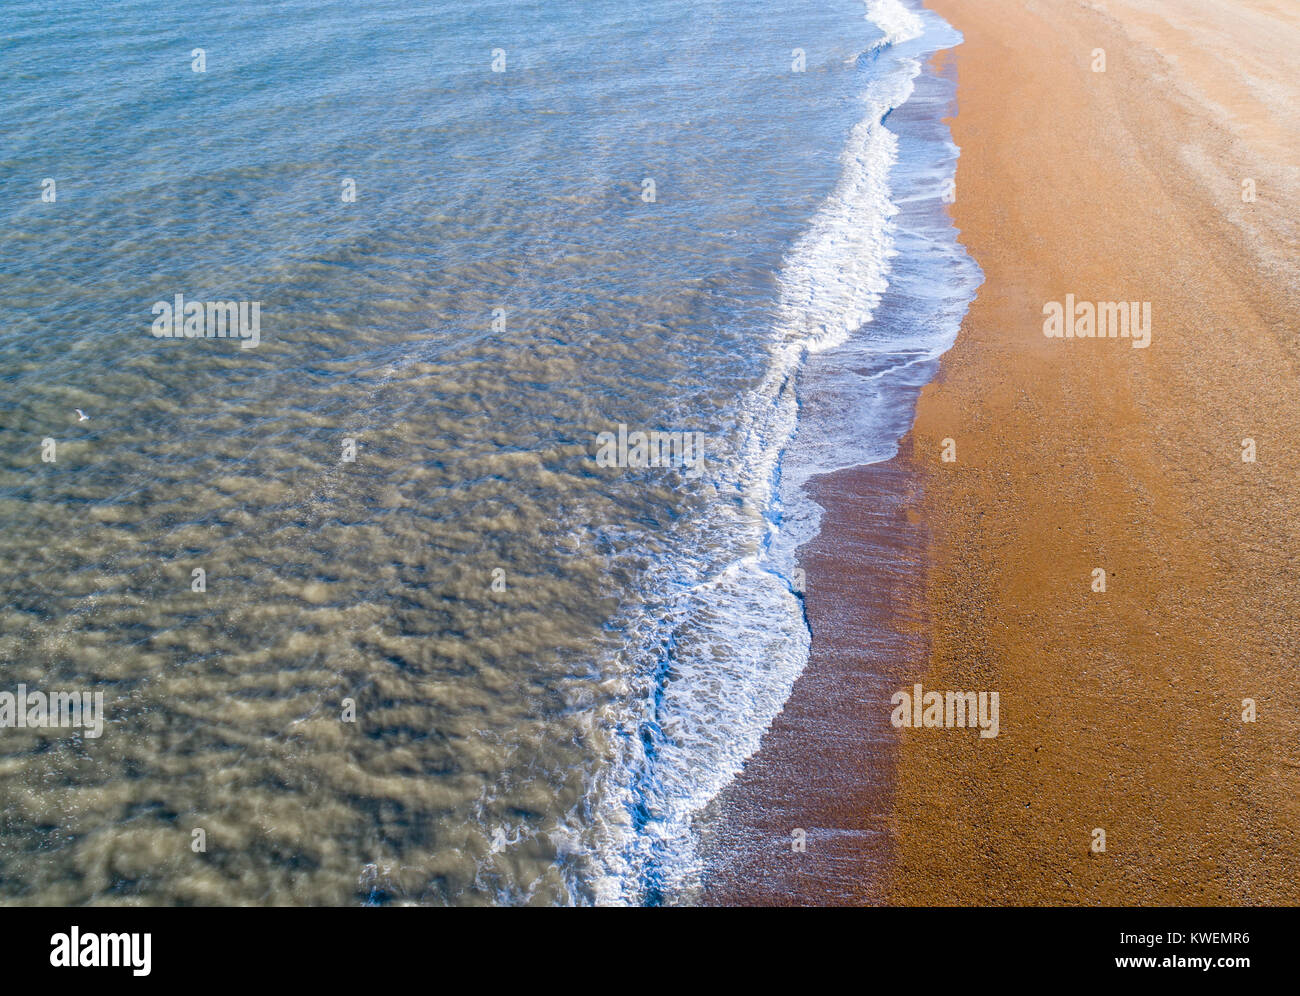 La plage de seaford dans l'East Sussex par drone Banque D'Images